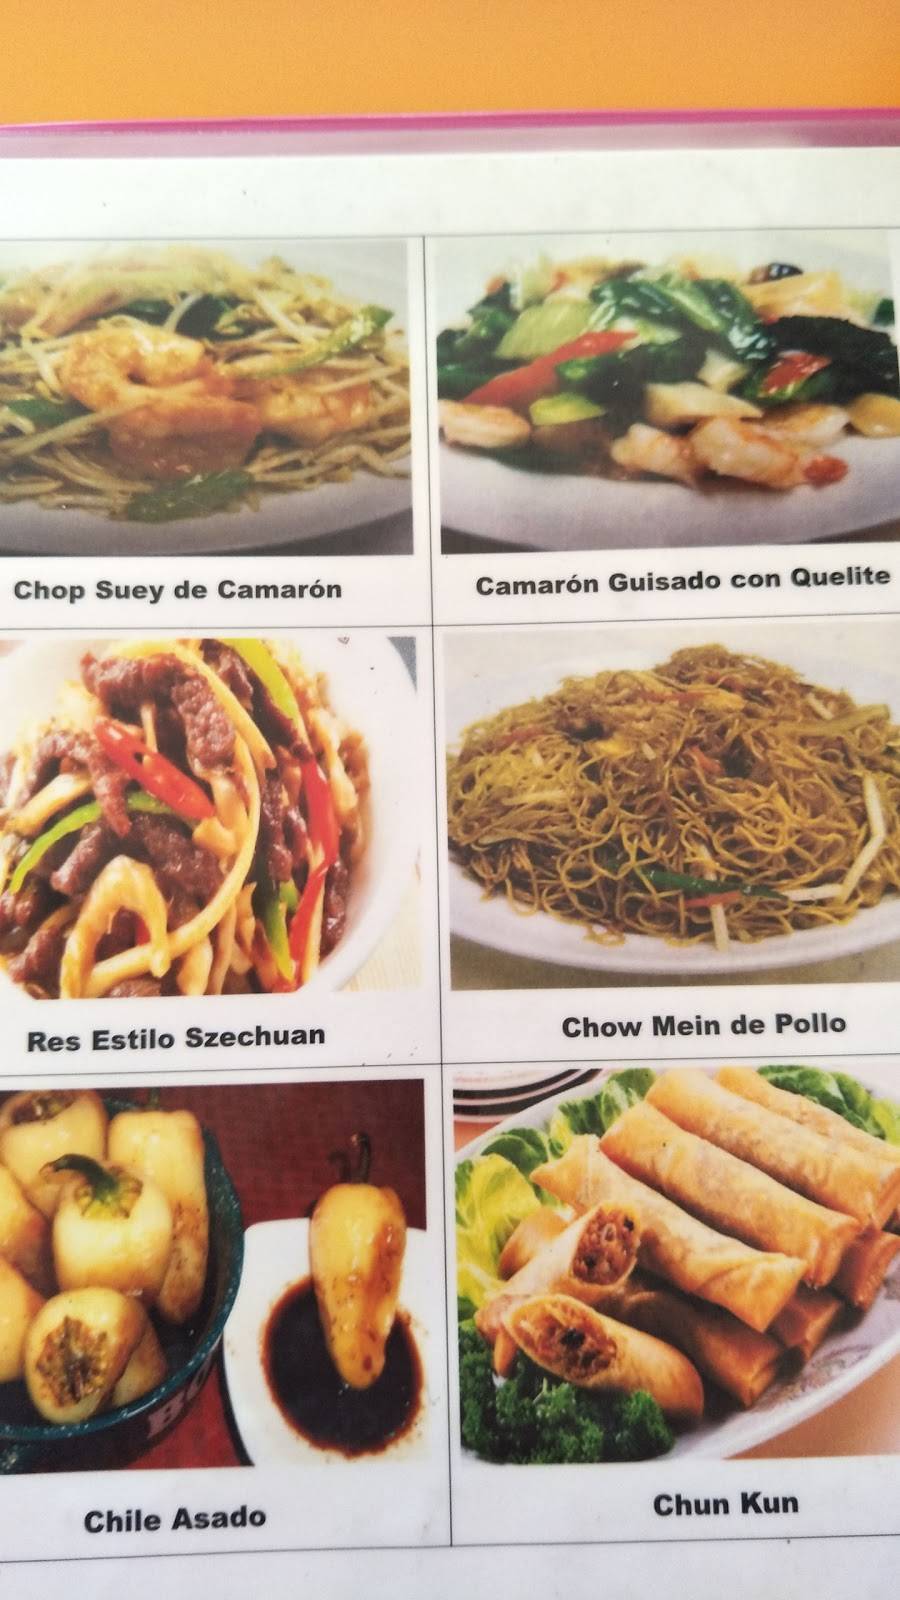 Comida China Hermanos | restaurant | Bulevar Abedules 10260, Fraccionamiento Casa Grande, 22237 Tijuana, B.C., Mexico | 9782187 OR +52 9782187